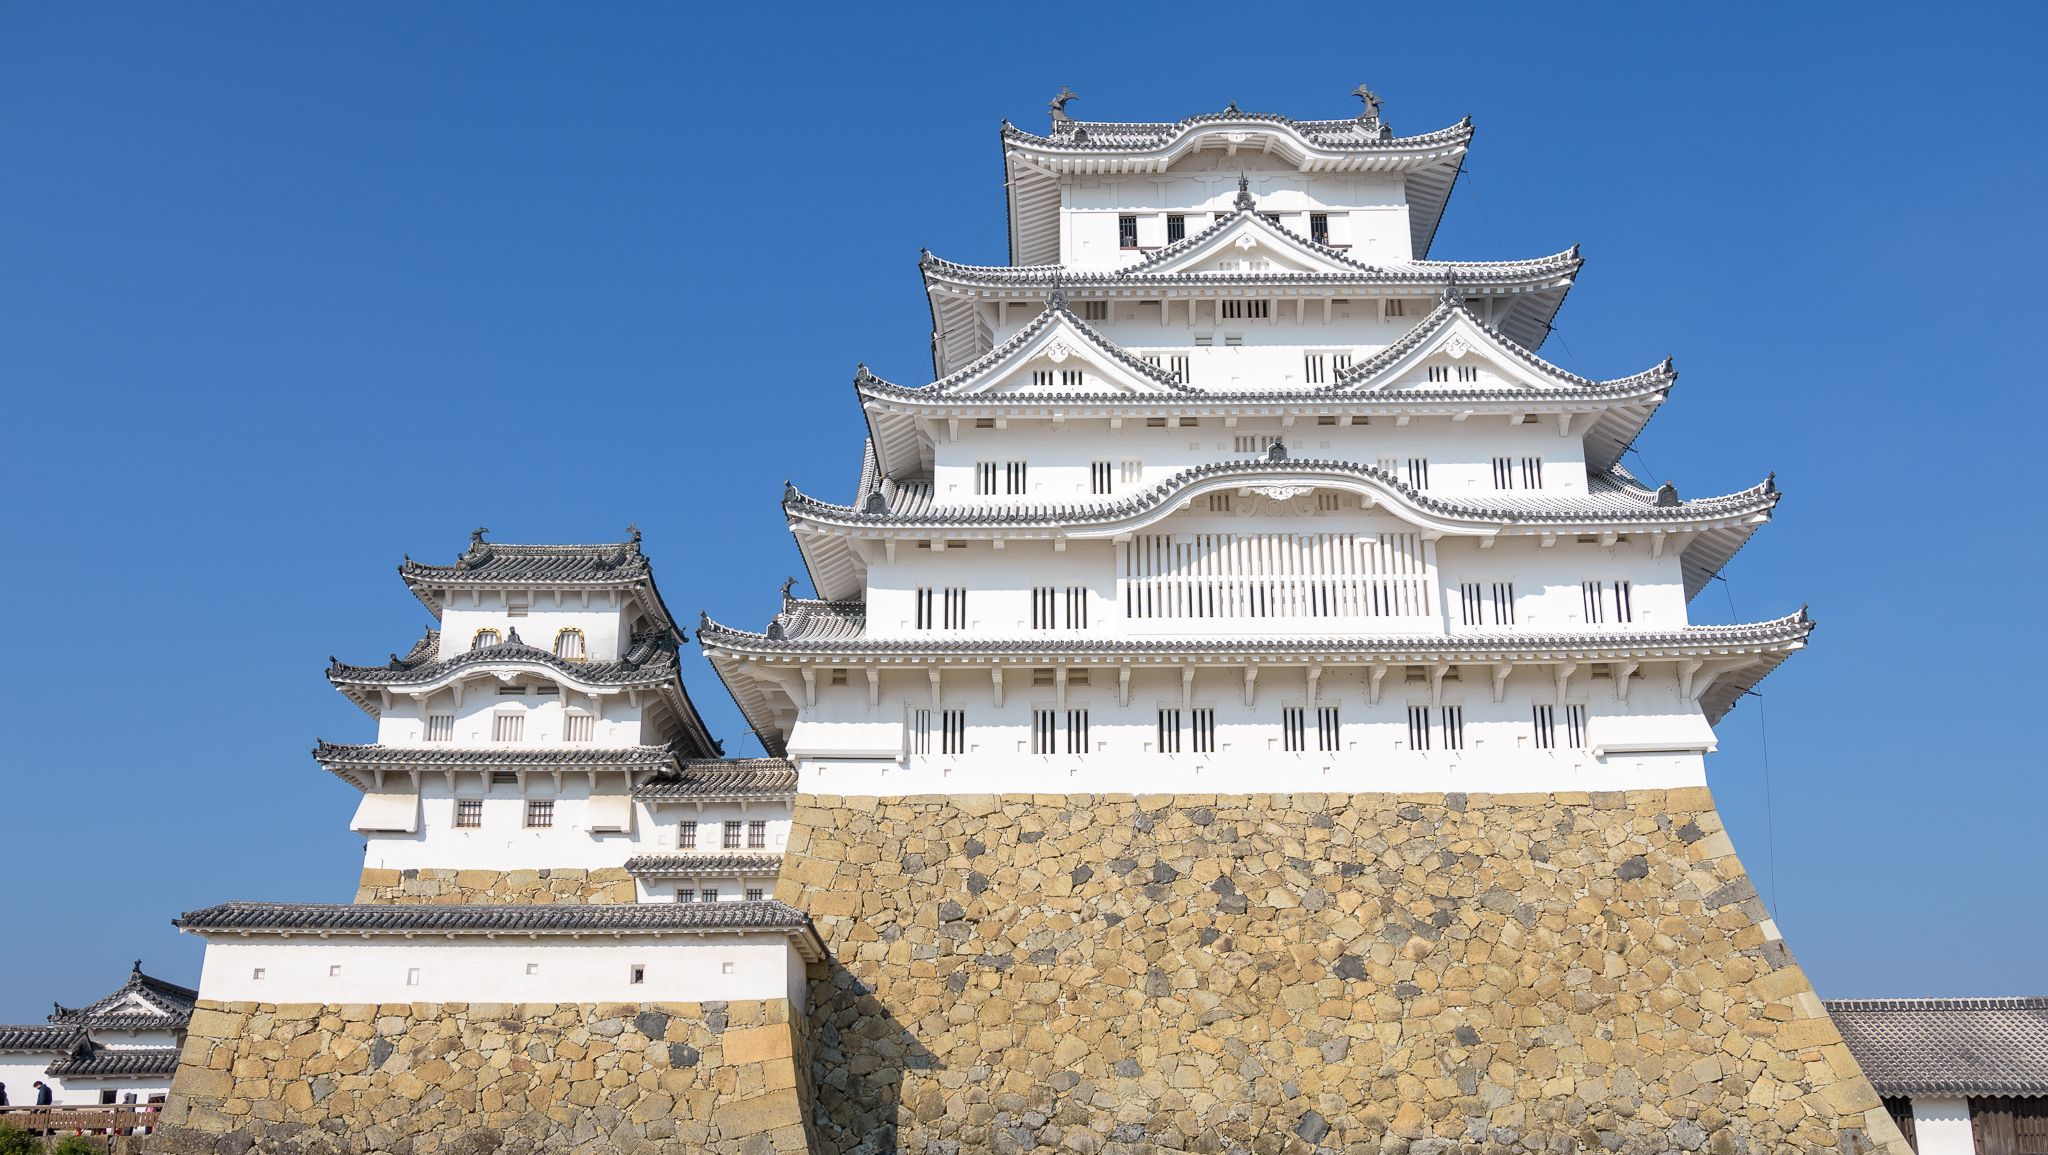 Тенсю (центральная башня) замка Химэдзи, Химэдзи, Япония 05.11.2016